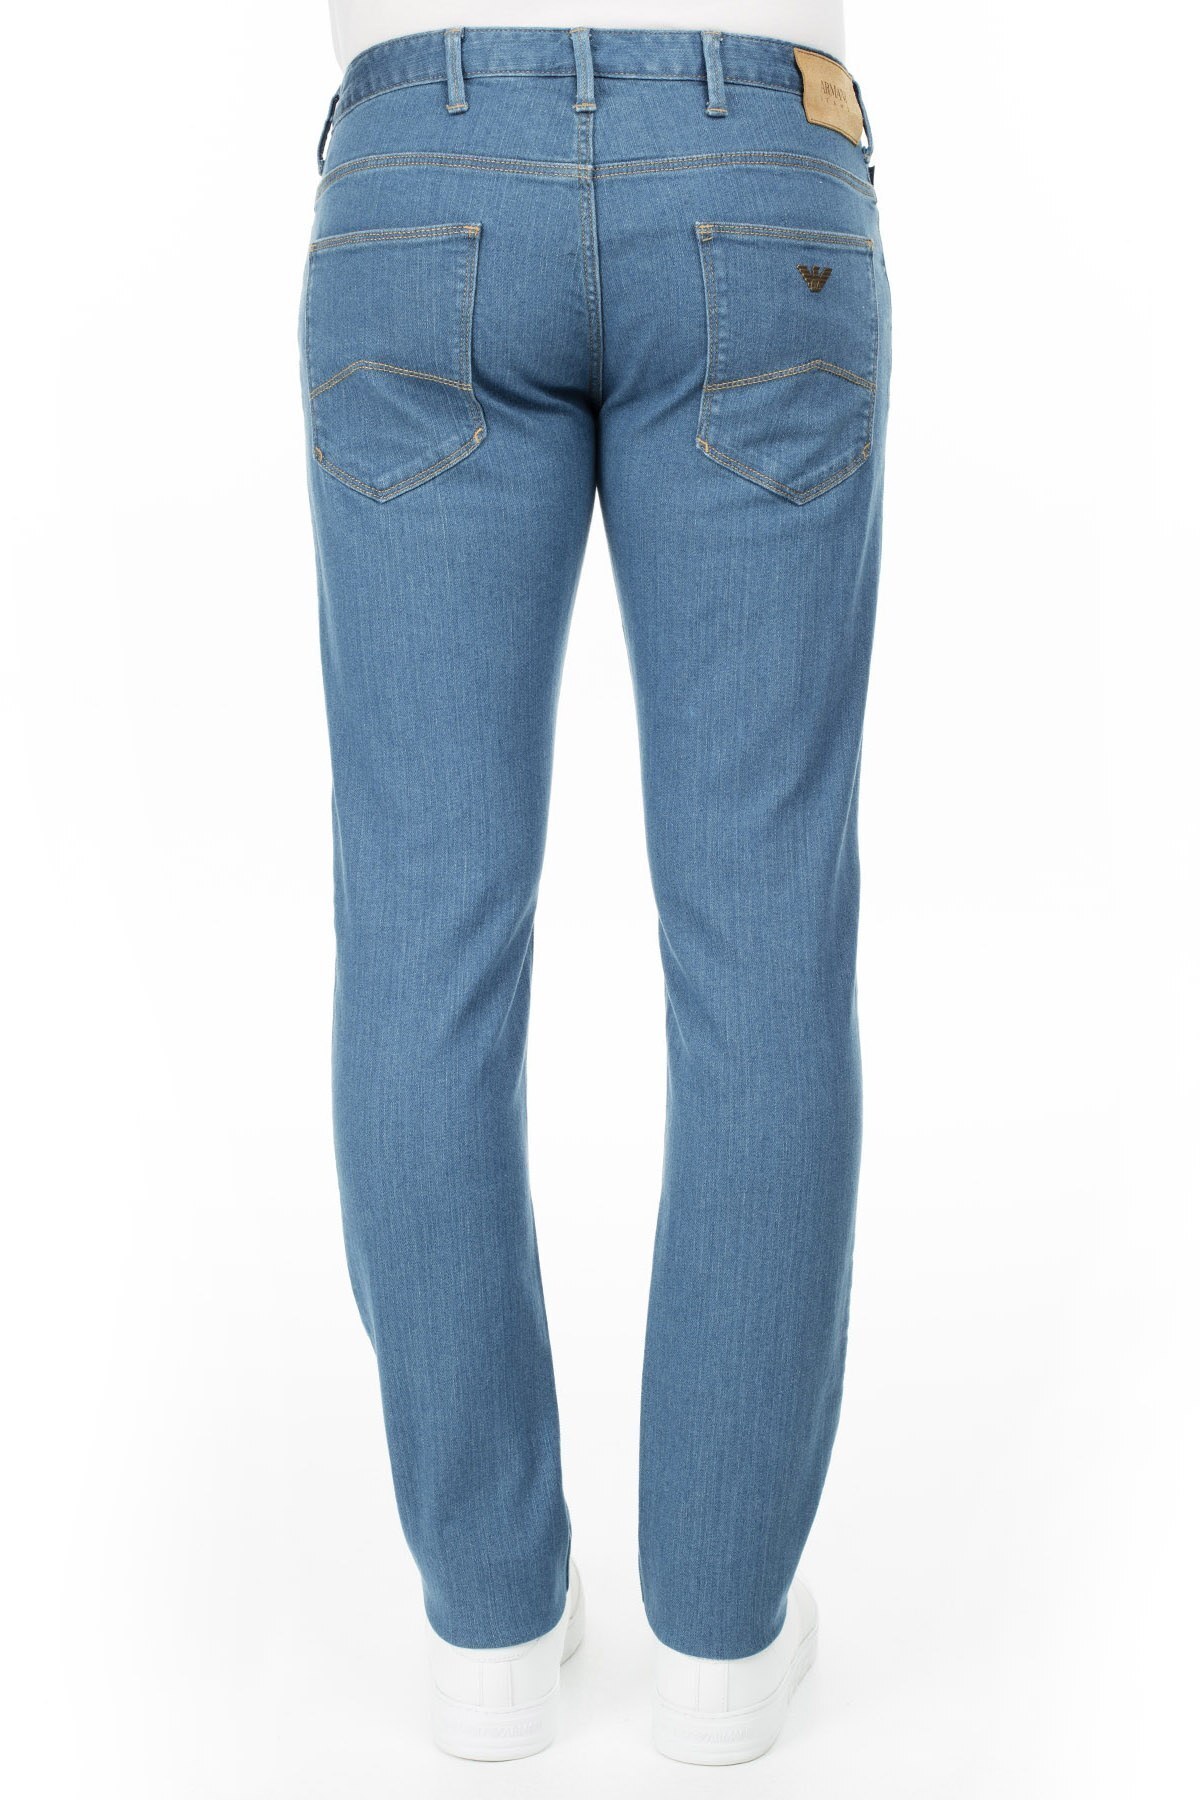 Armani J06 Jeans Erkek Kot Pantolon 3Y6J06 6DBQZ 1500 MAVİ